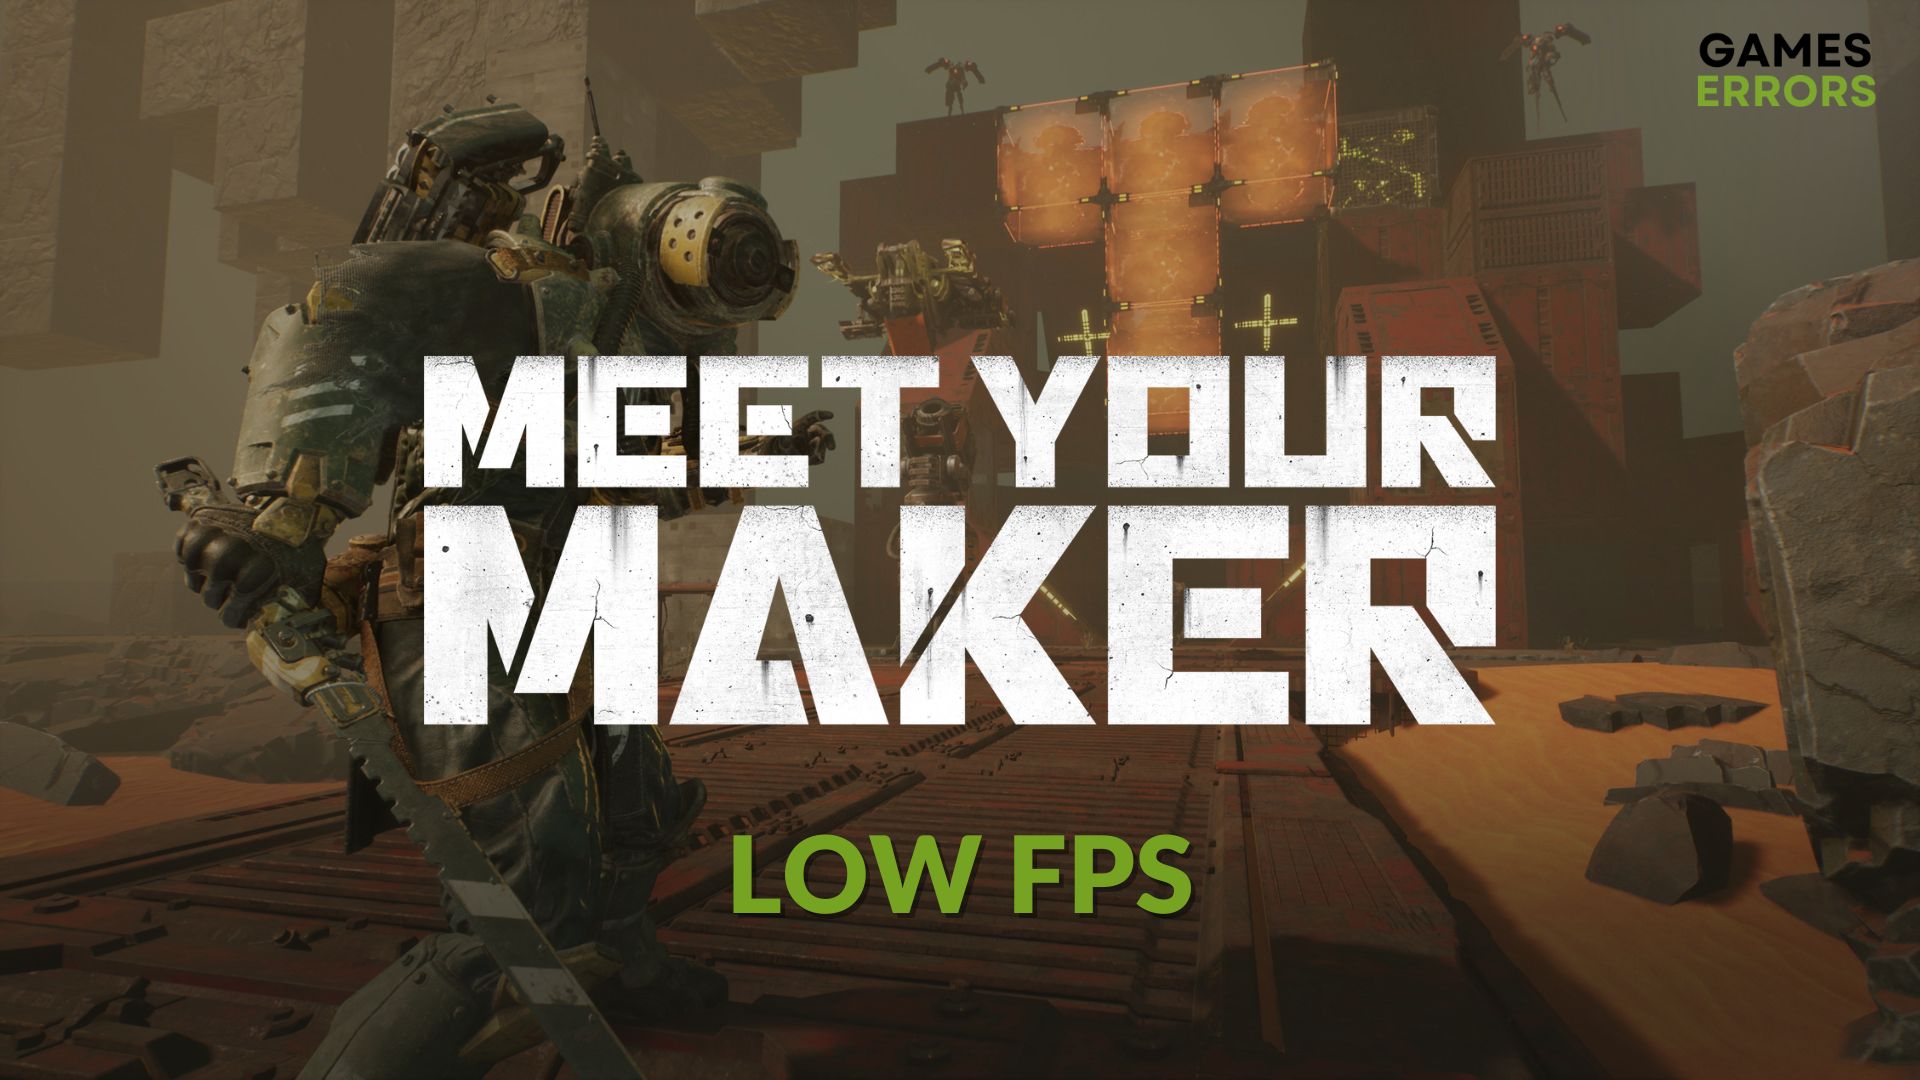 How to fix Meet your makerlow fps